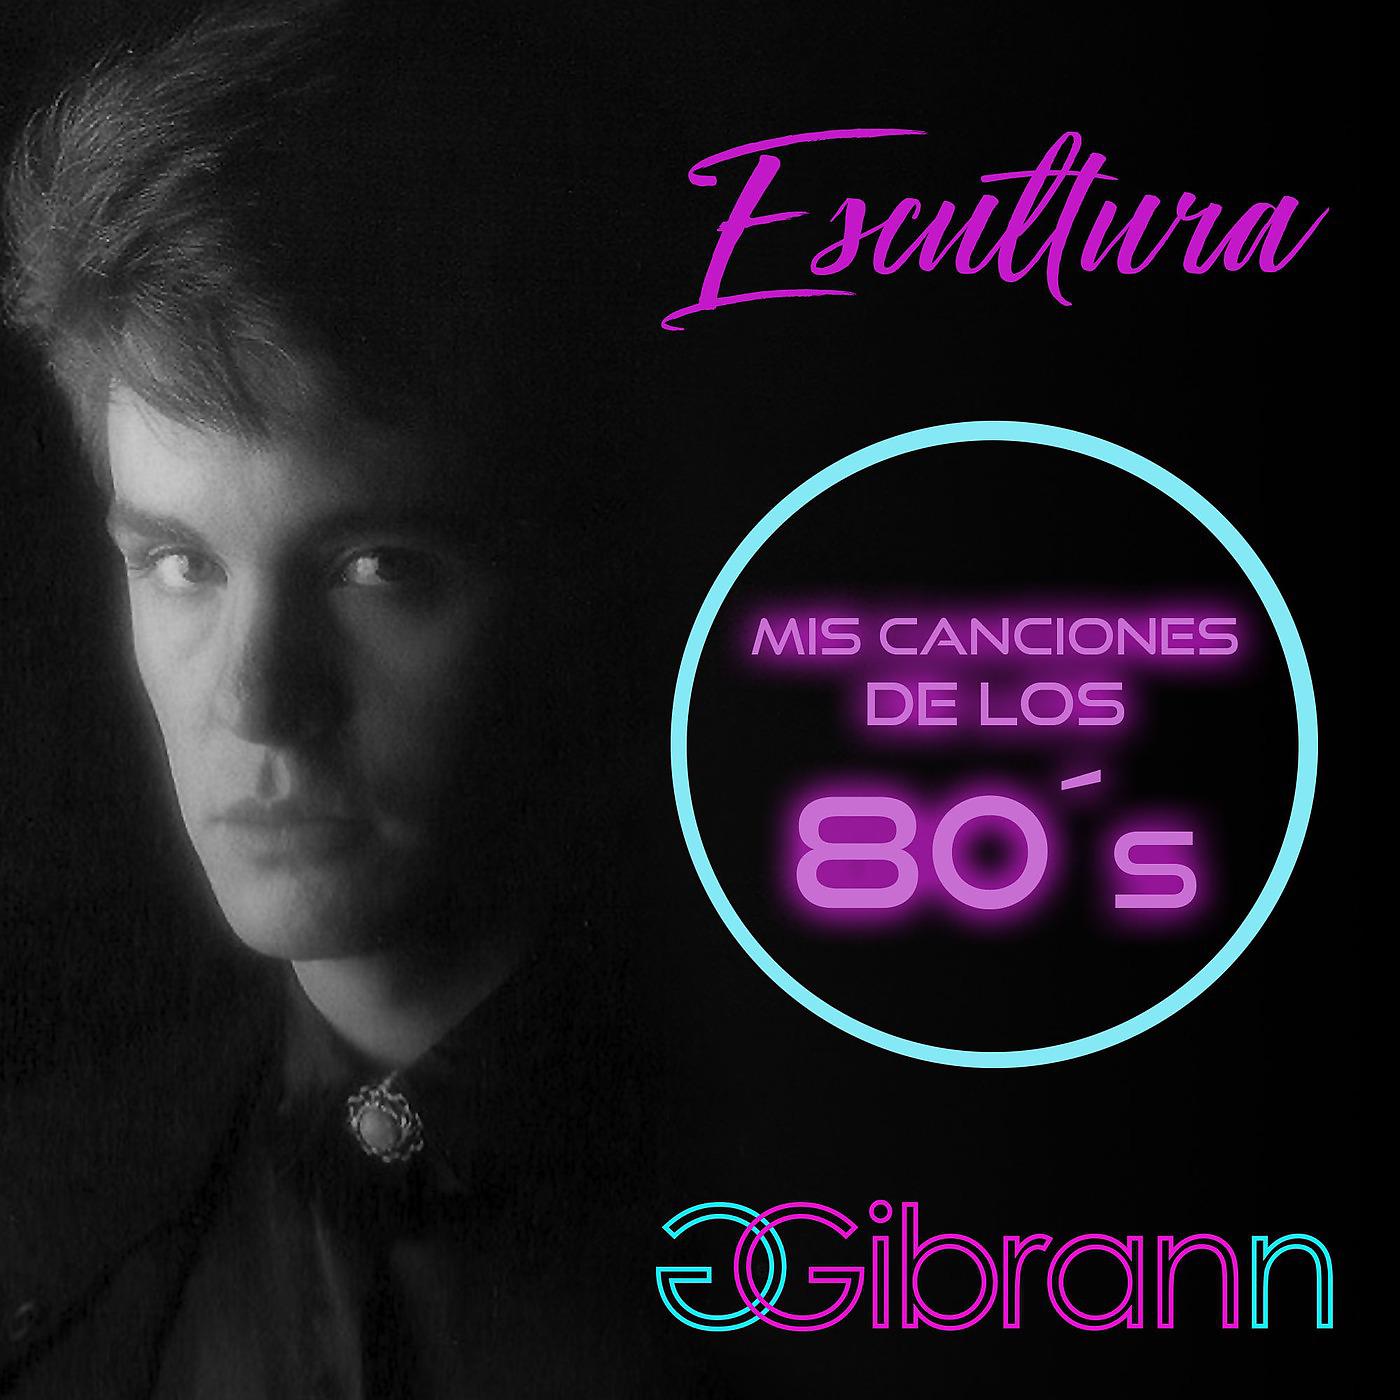 Постер альбома Escultura Mis Canciones de los 80s